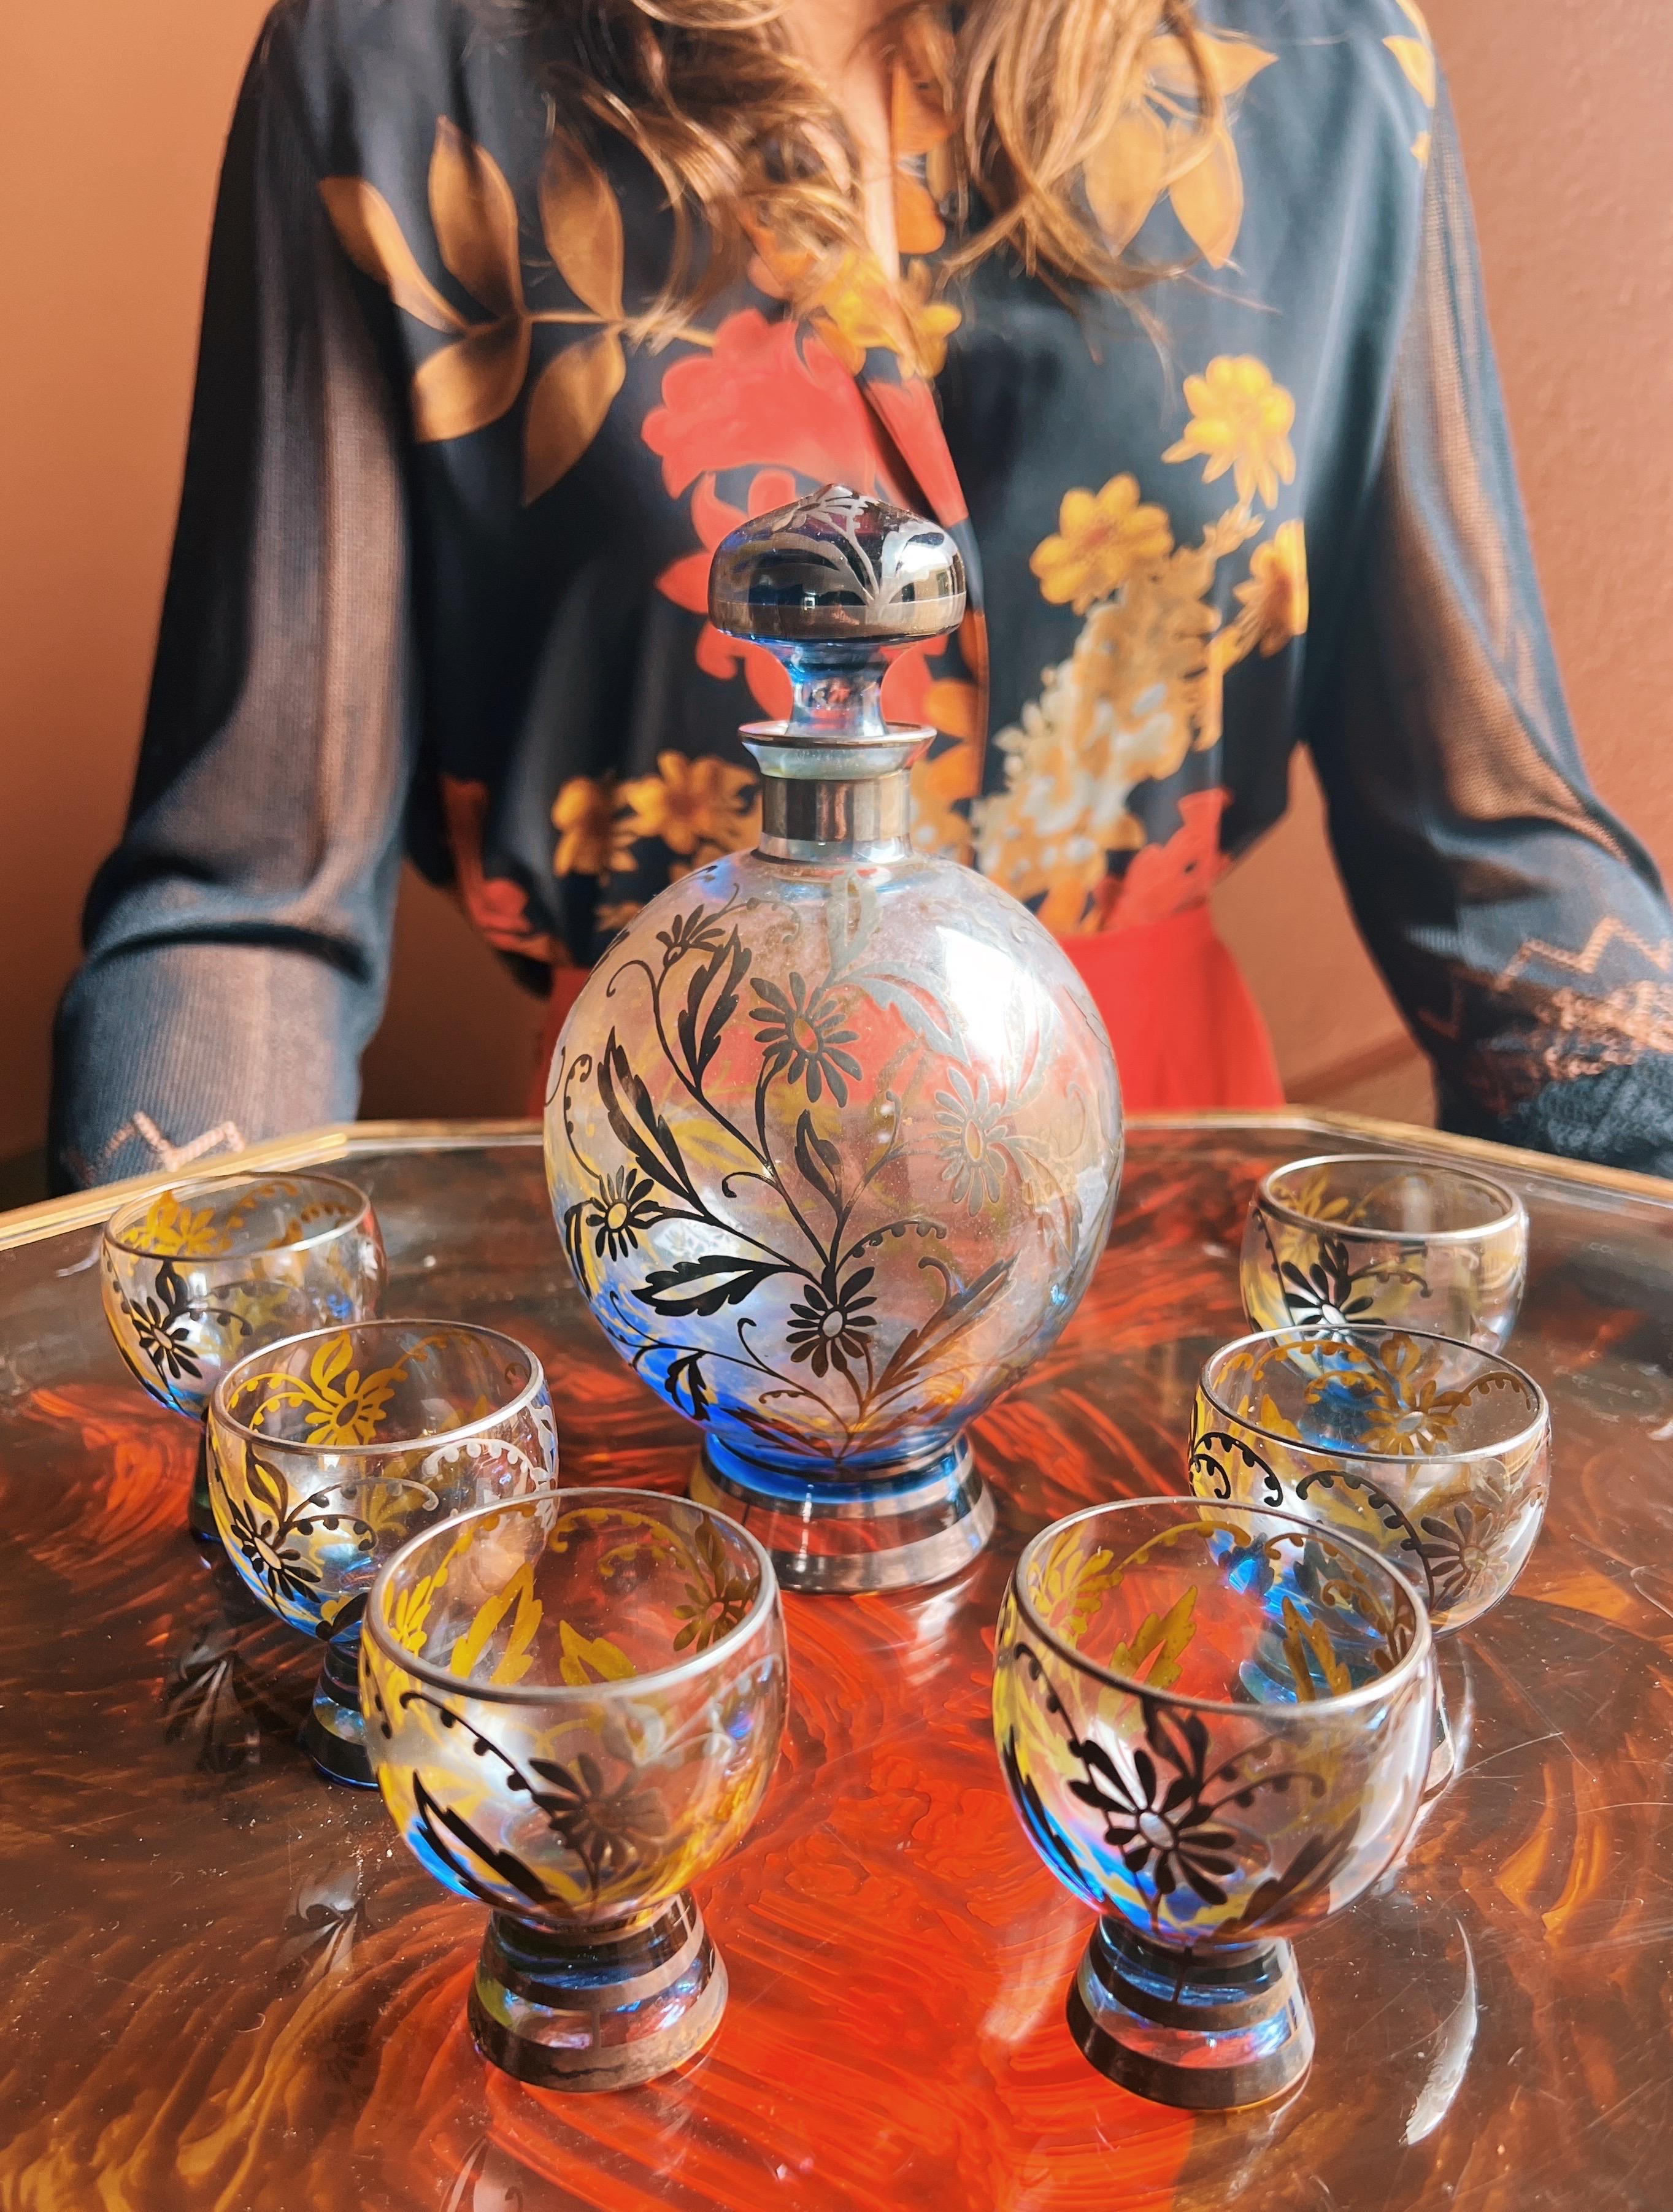 Echa un vistazo a este asombroso juego: seis copas con una botella a juego, todas ellas de impresionante vidrio artístico veneciano con intrincados motivos florales en plata 925. Notarás un toque de azul en la copa. 

Estos vasos son perfectos para